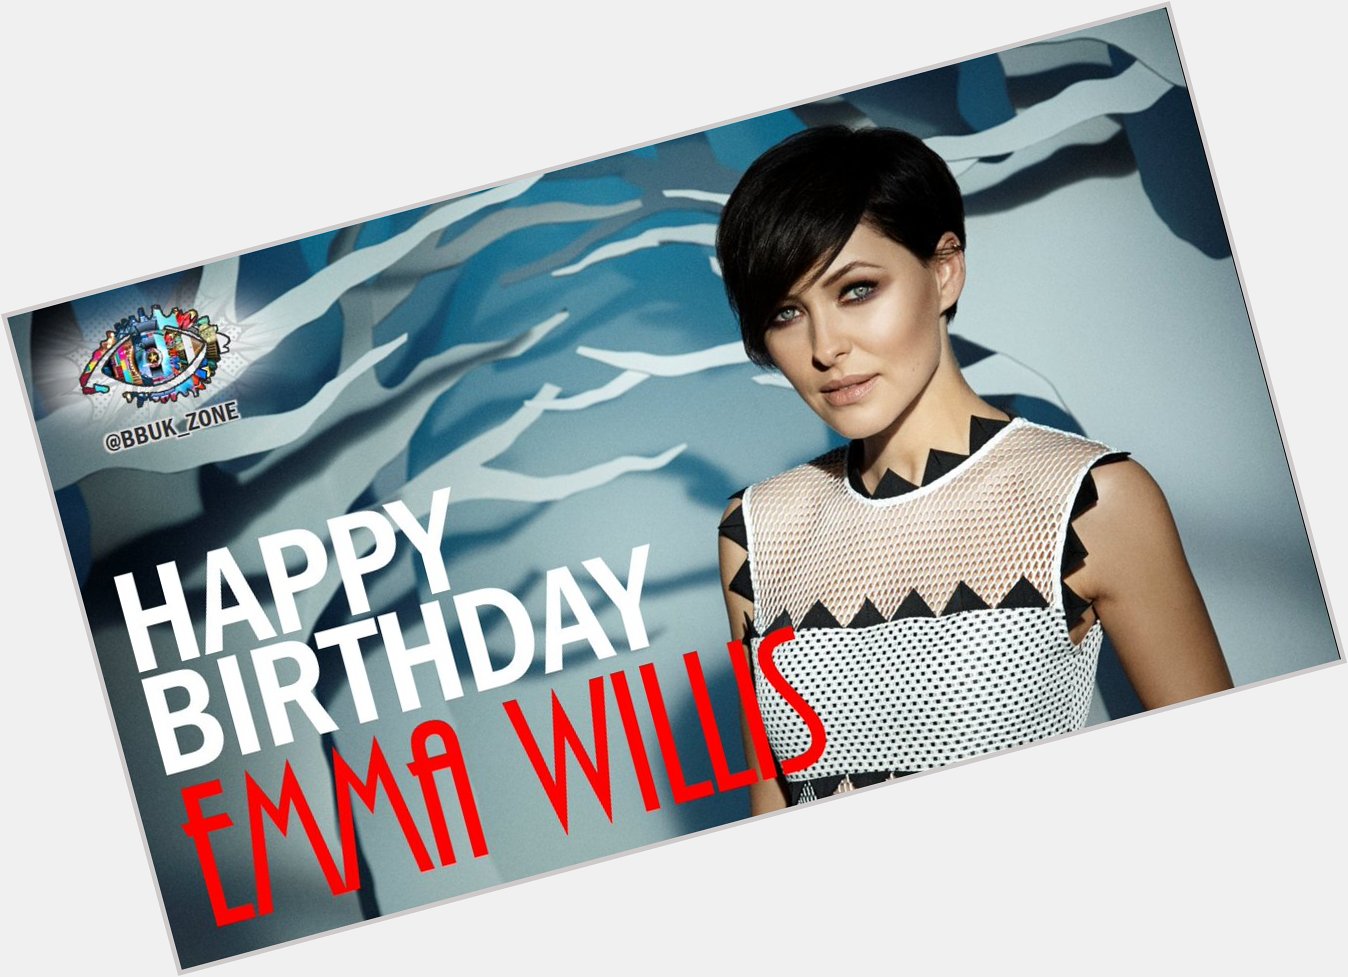 Happy Birthday to the amazing Emma Willis!  